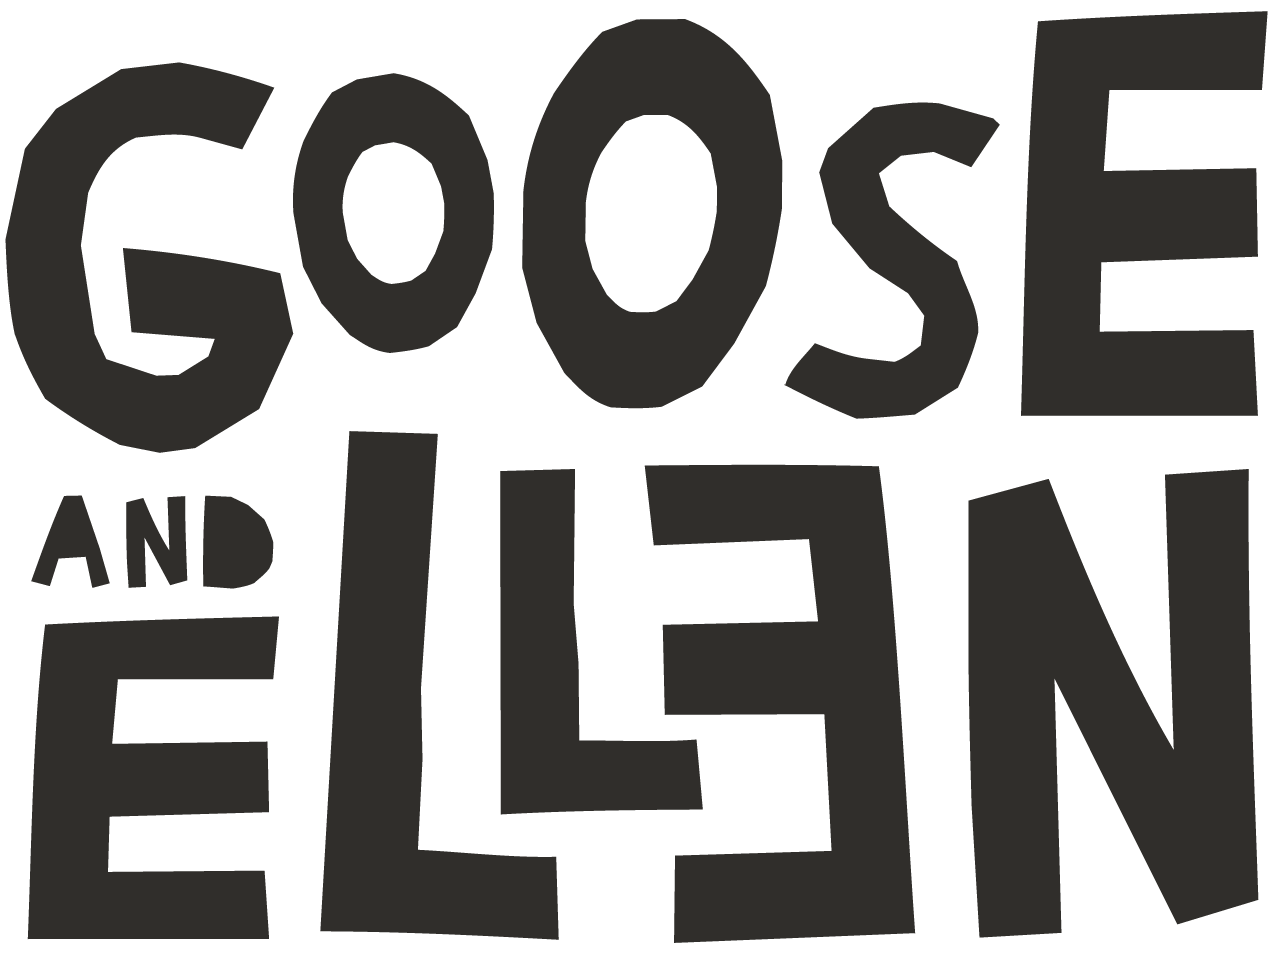 Goose and Ellen